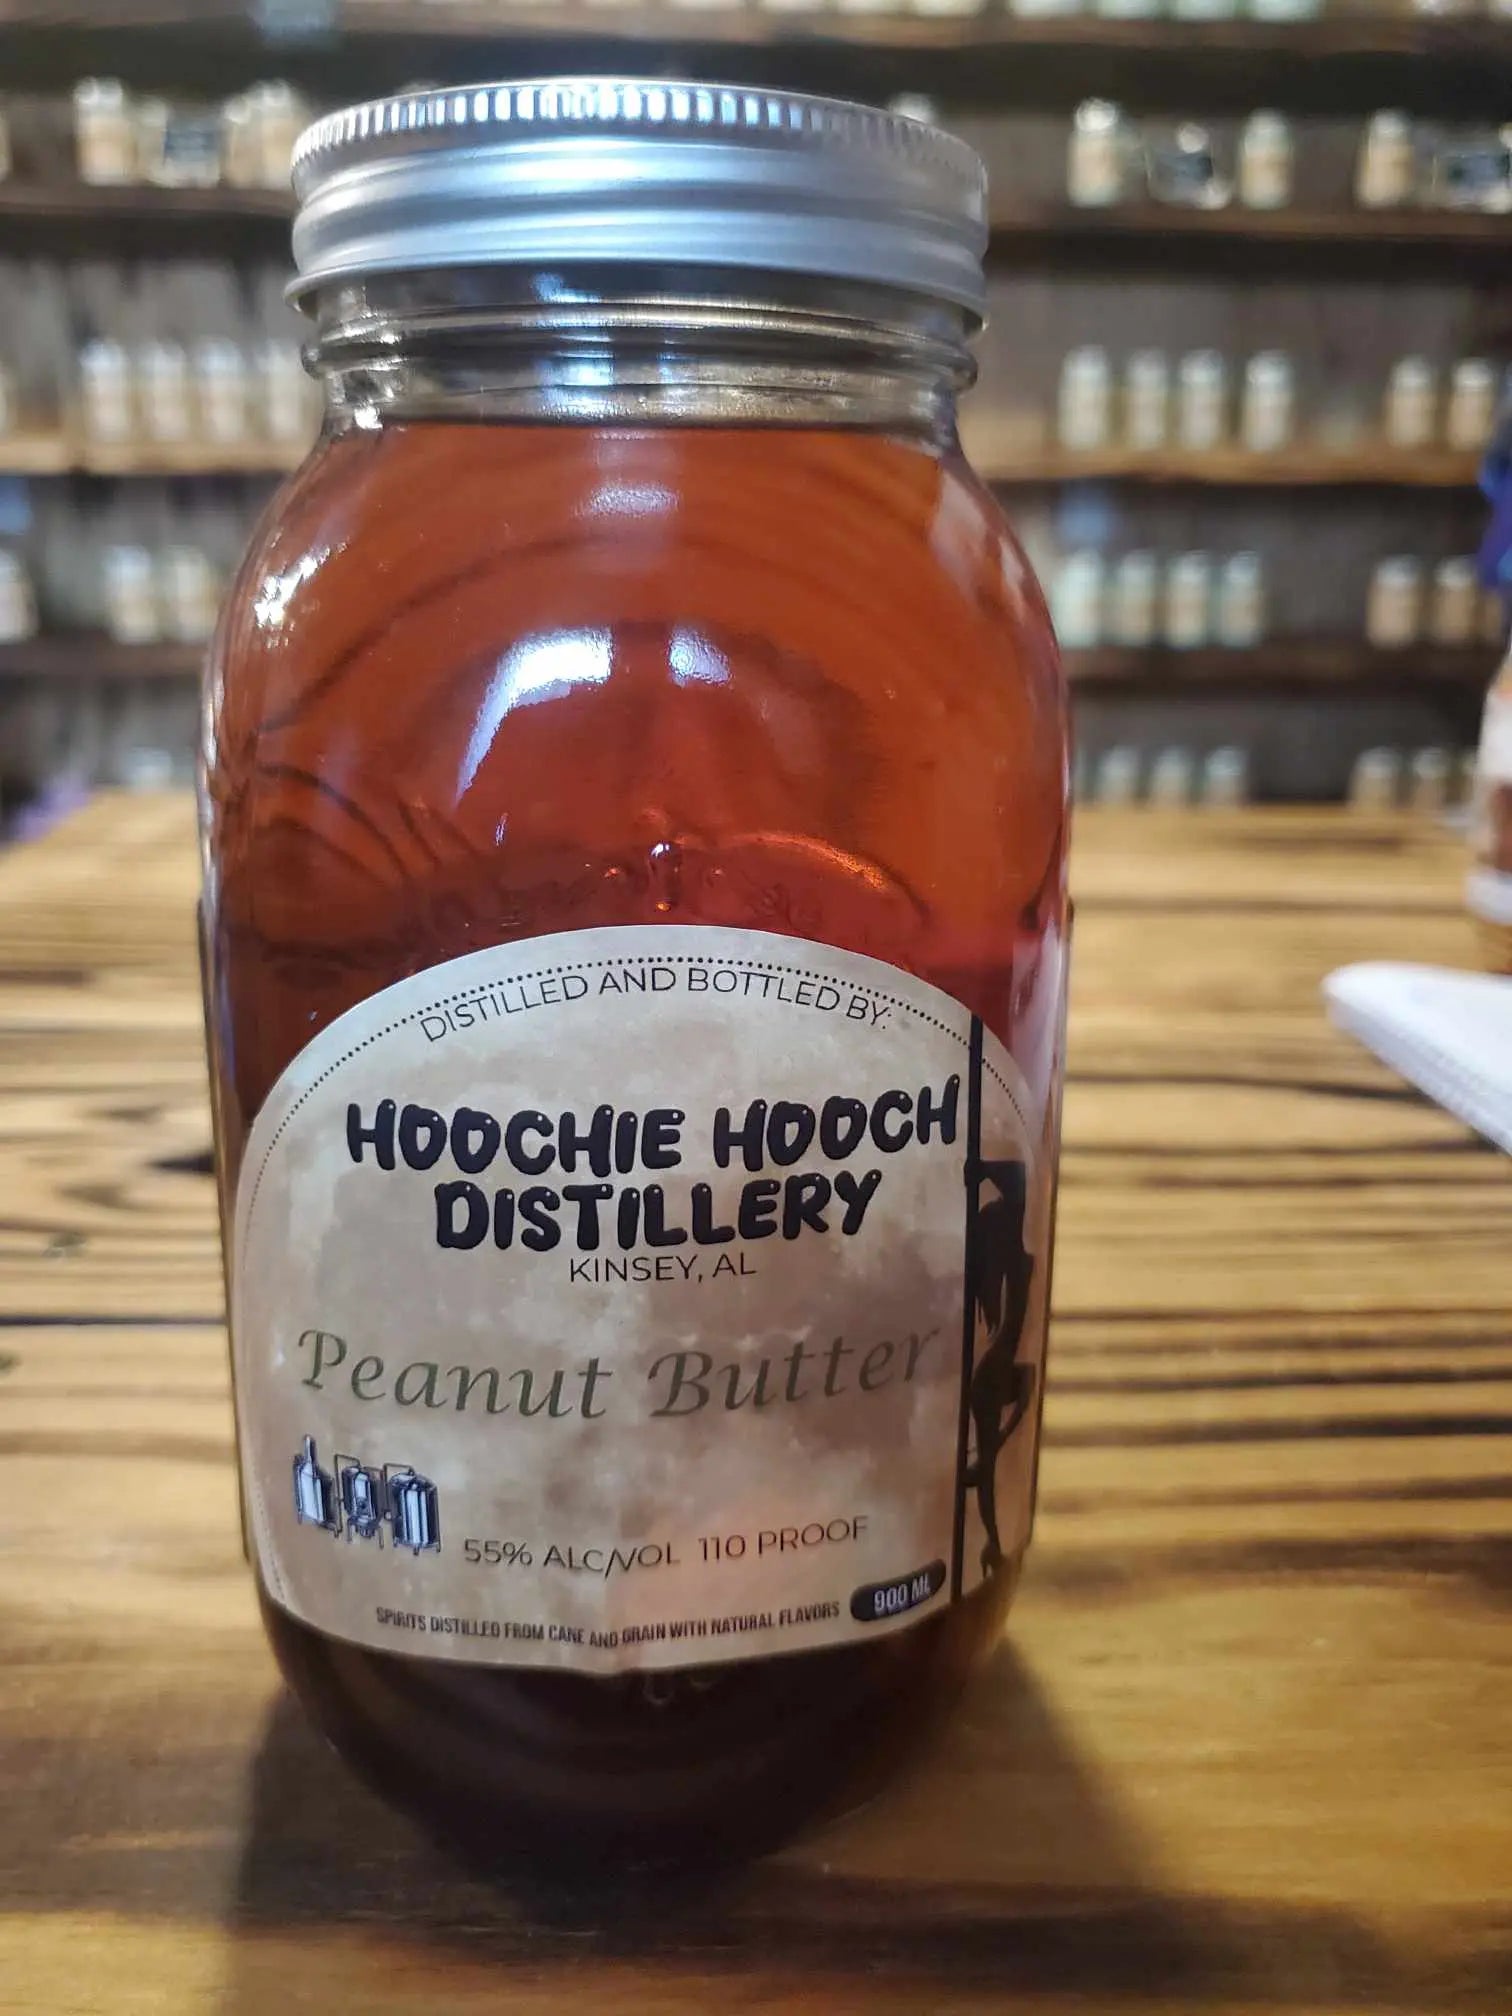 Peanut Butter Moonshine | Hoochie Hooch Distillery Hoochie Hooch Distillery